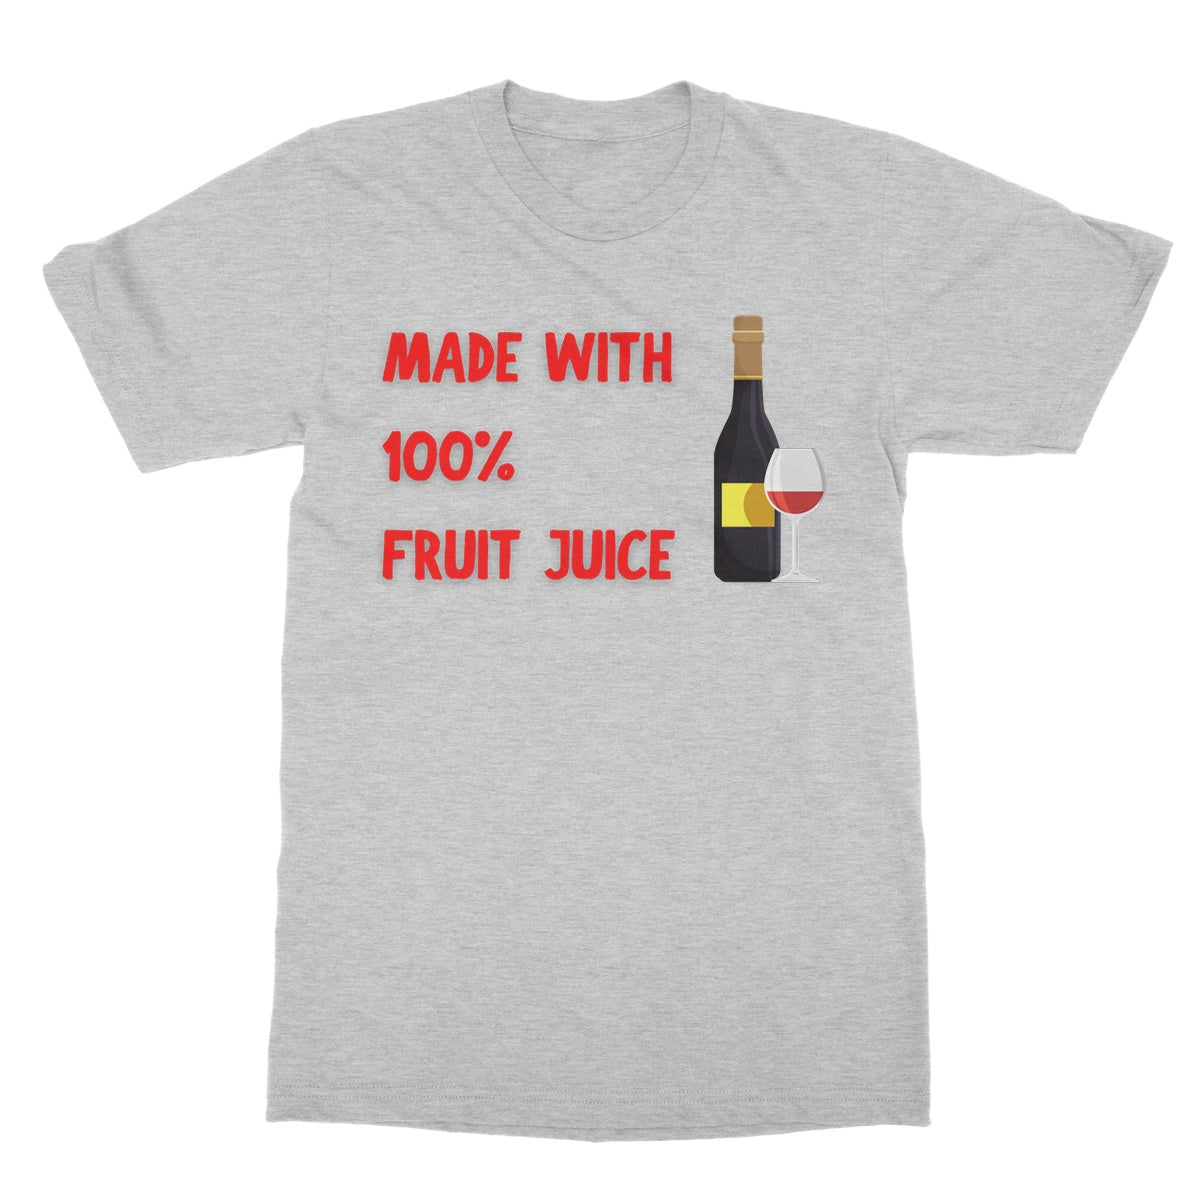 made with 100% fruit juice t shirt grey